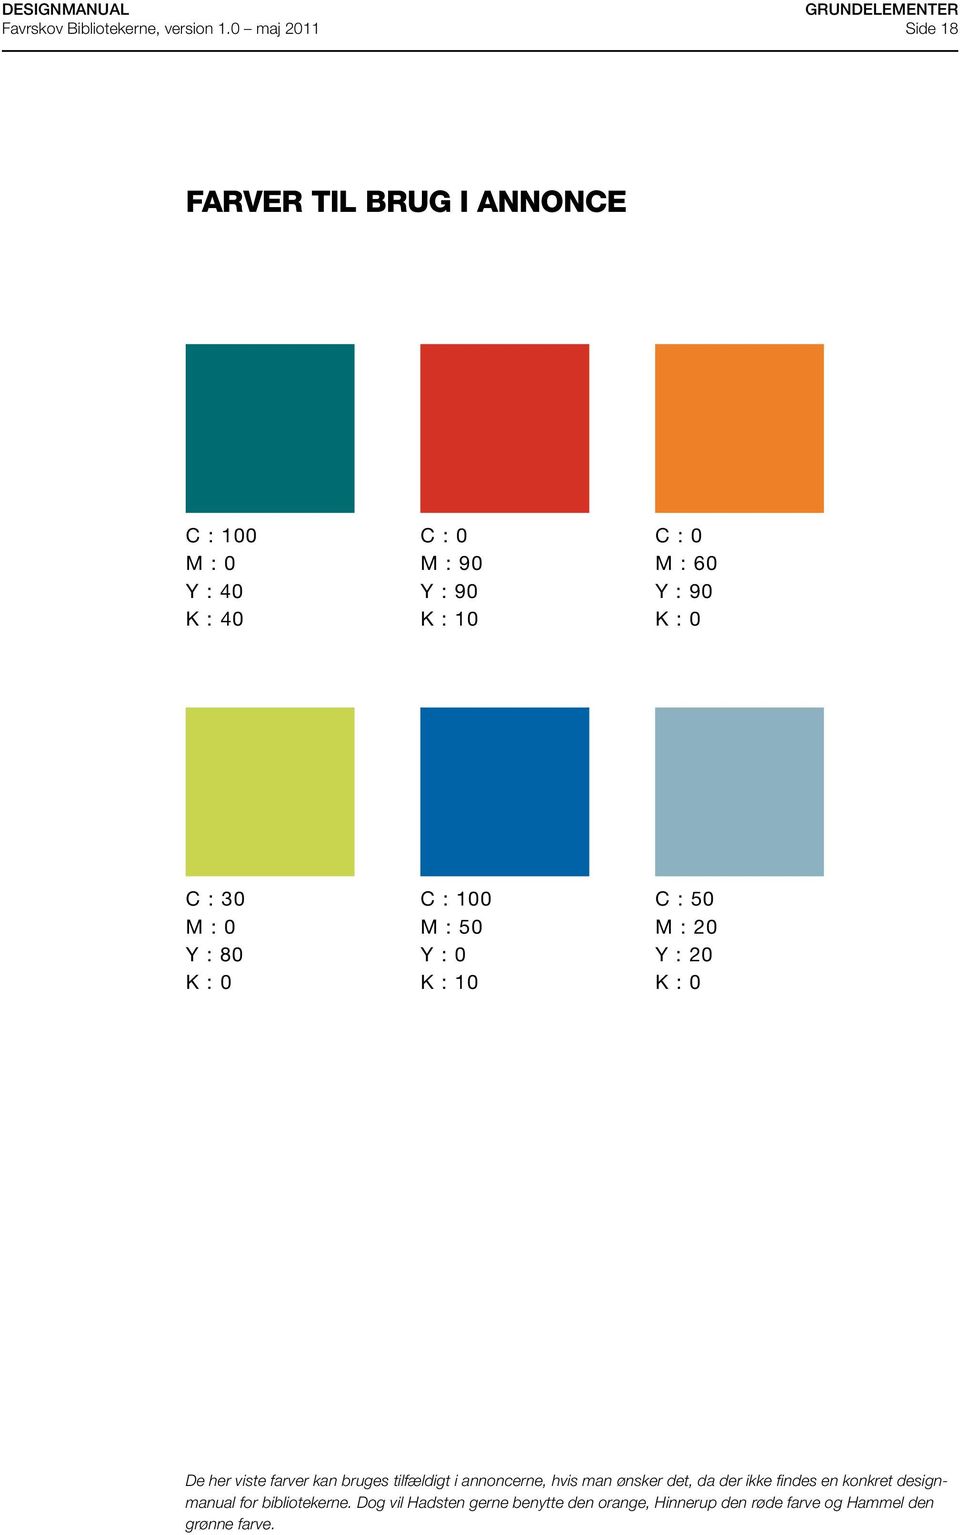 farver kan bruges tilfældigt i annoncerne, hvis man ønsker det, da der ikke findes en konkret designmanual